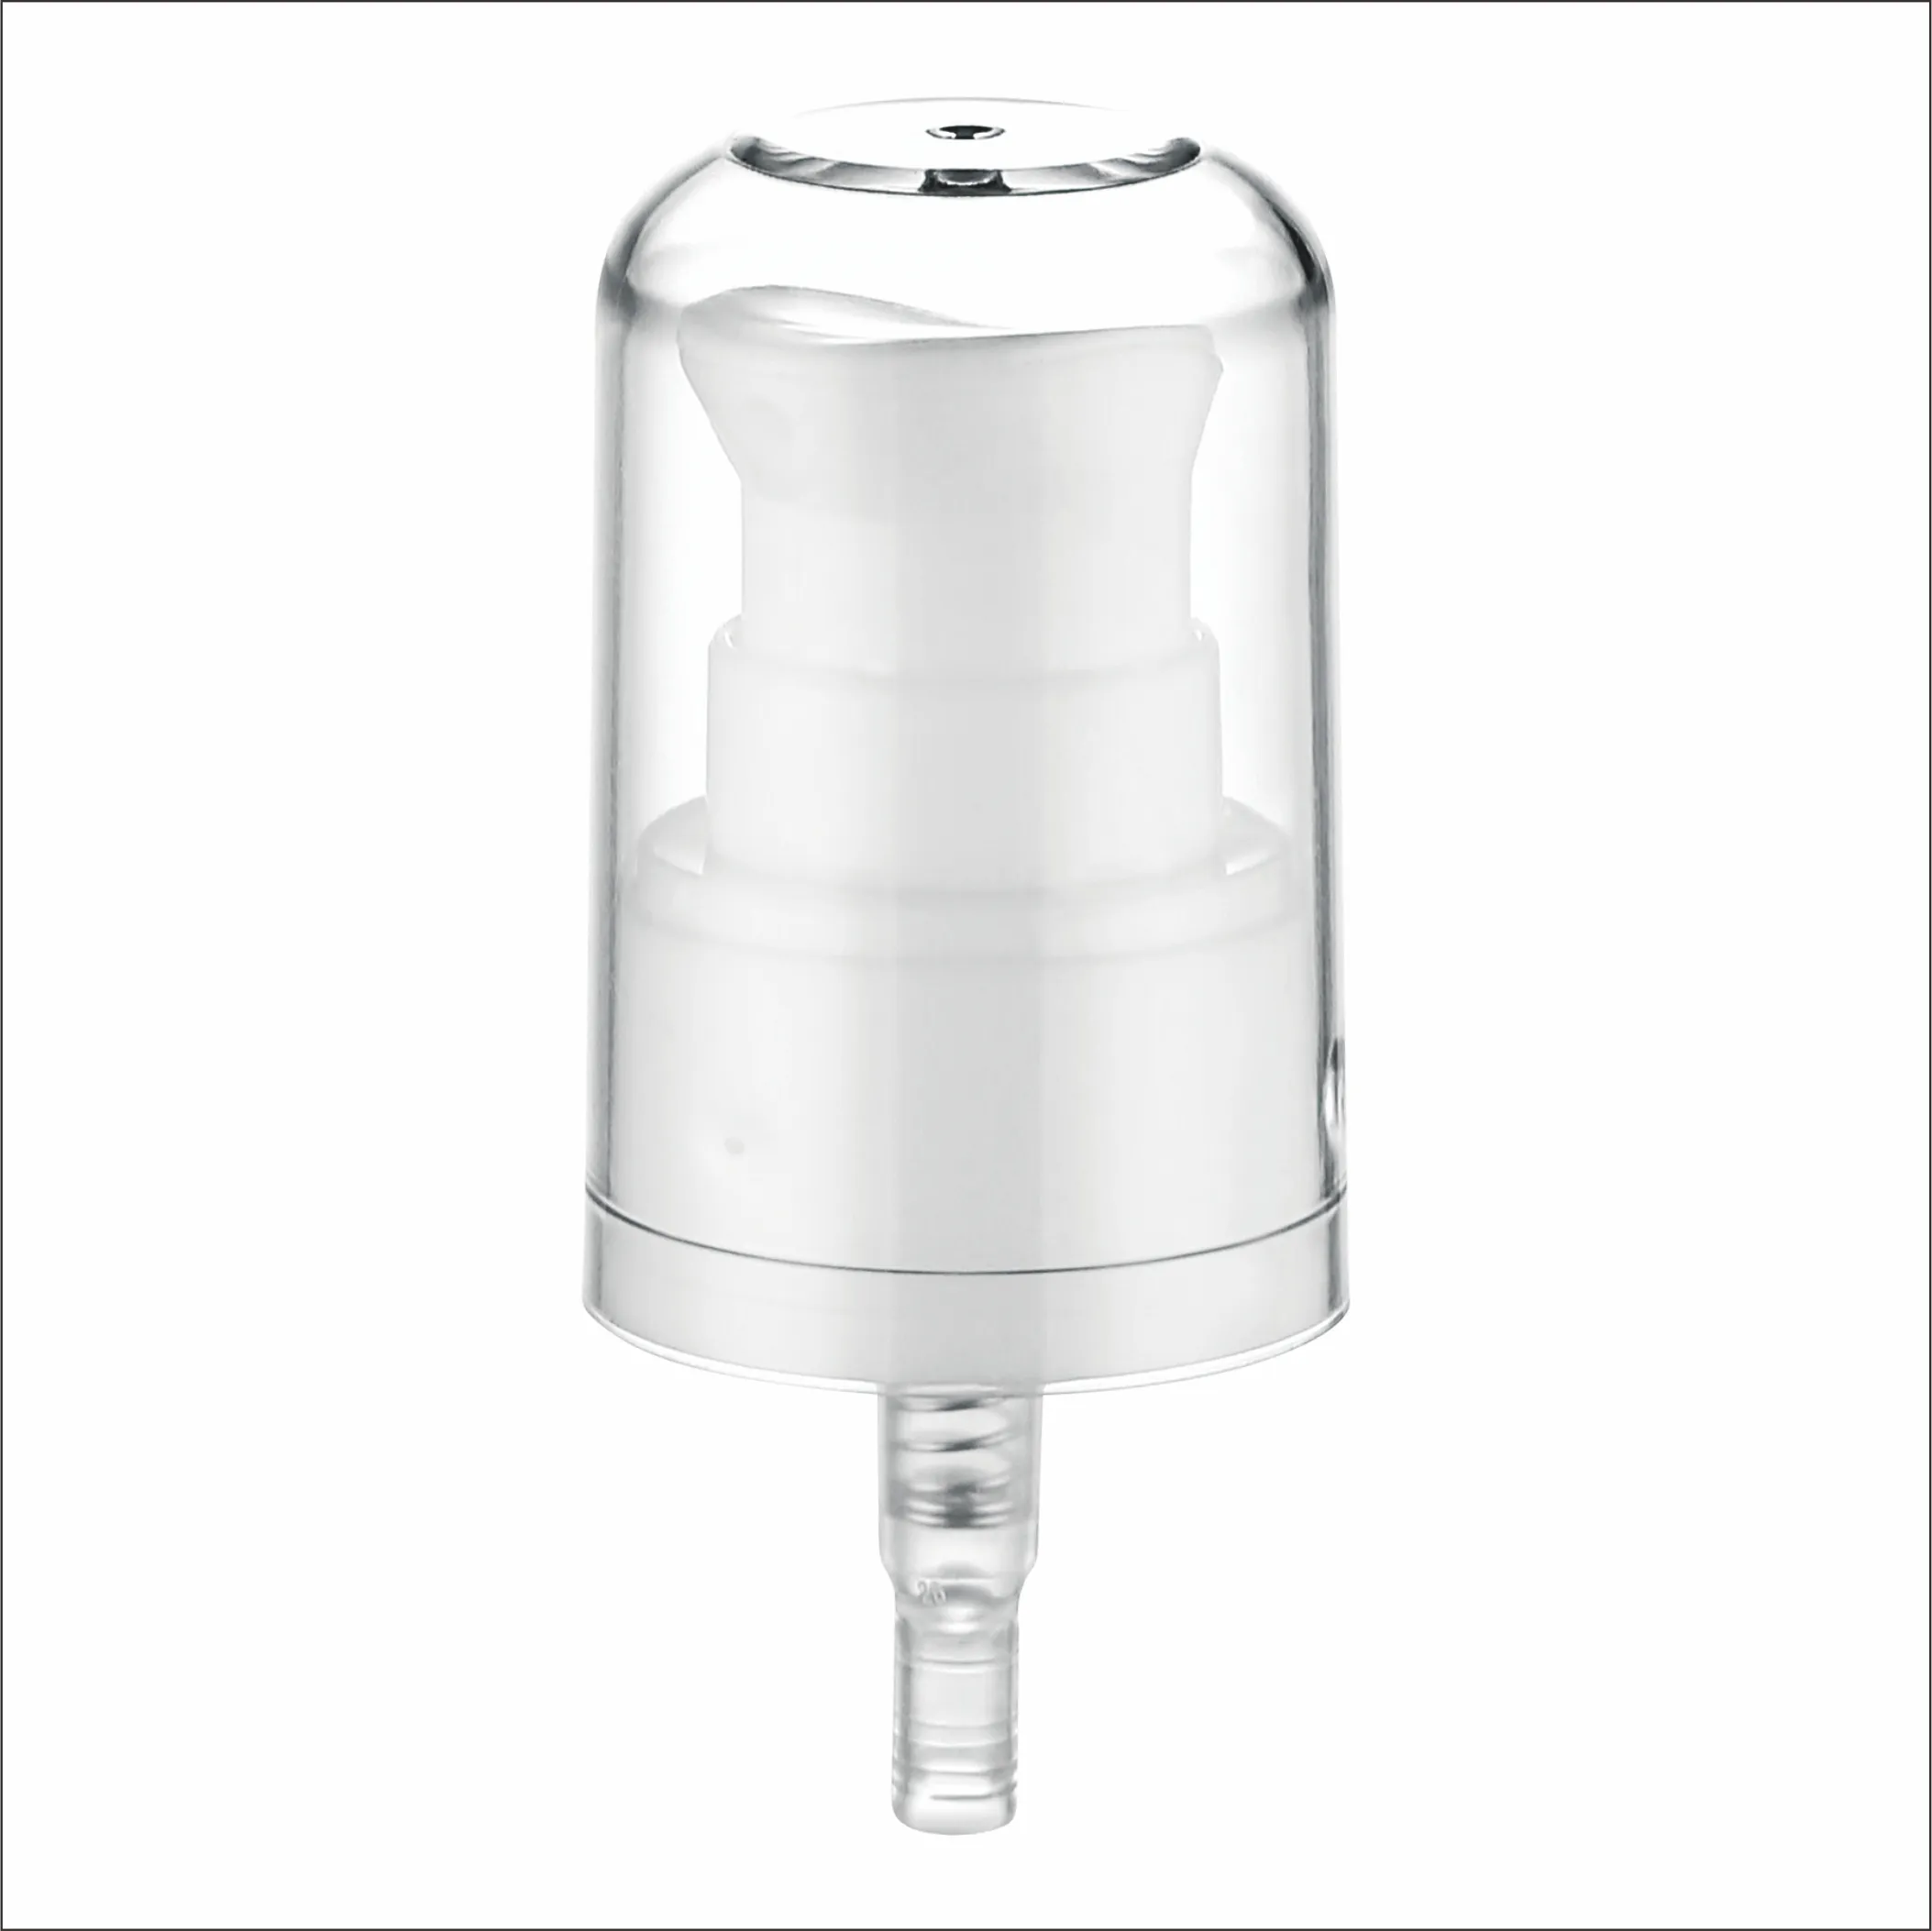 Hot sale 24/410 treatment pump 0.2ml PP plastic special actuator design full cap cream pump for cosmetic skin care bottle